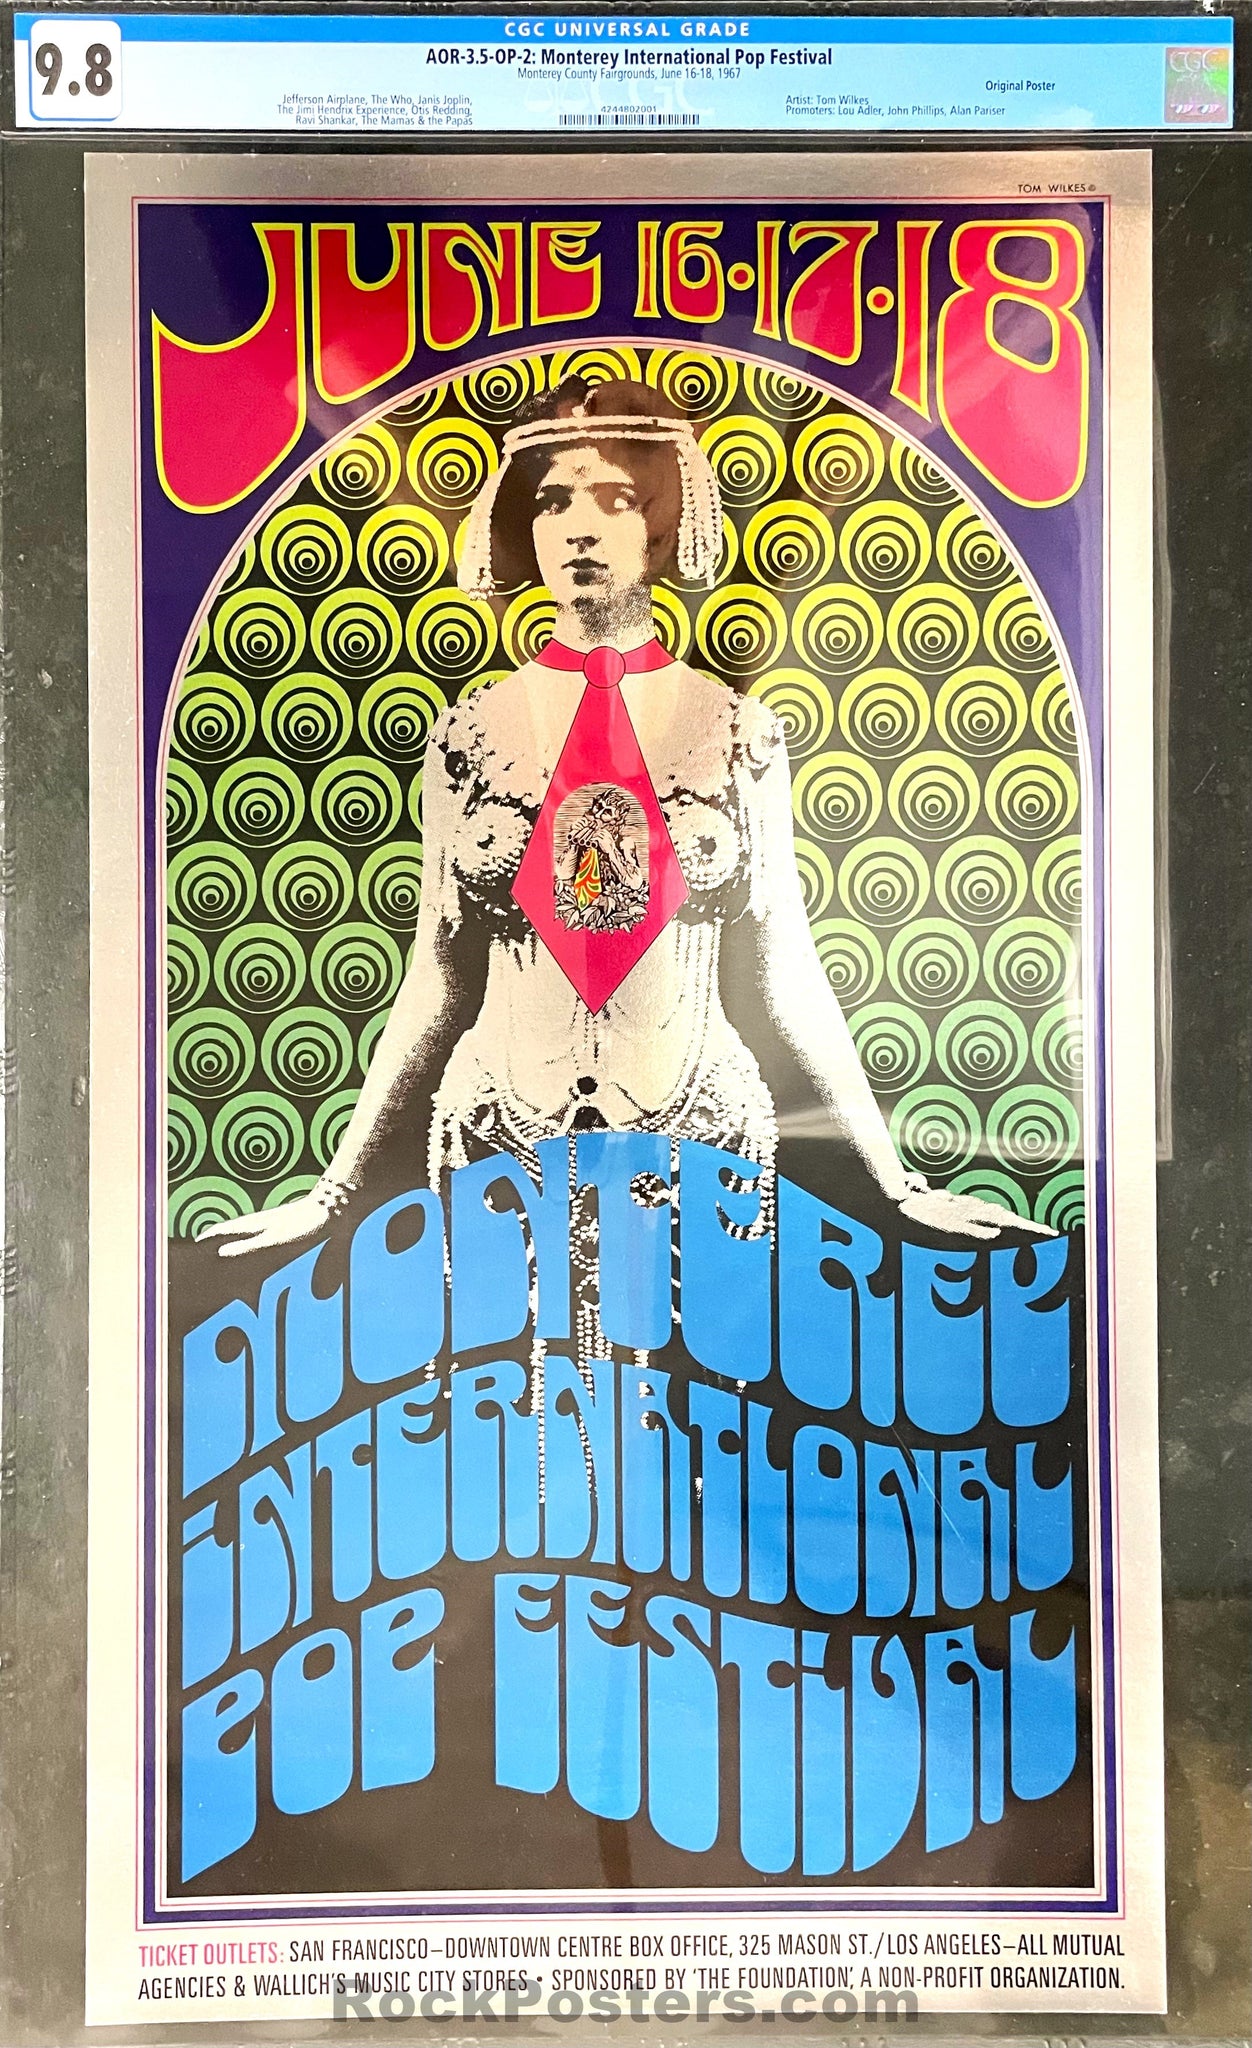 AUCTION - AOR 3.5 - Monterey Pop Festival - Jimi Hendrix Janis Joplin - 1967 Poster - Monterey Fairgrounds - CGC Graded 9.8